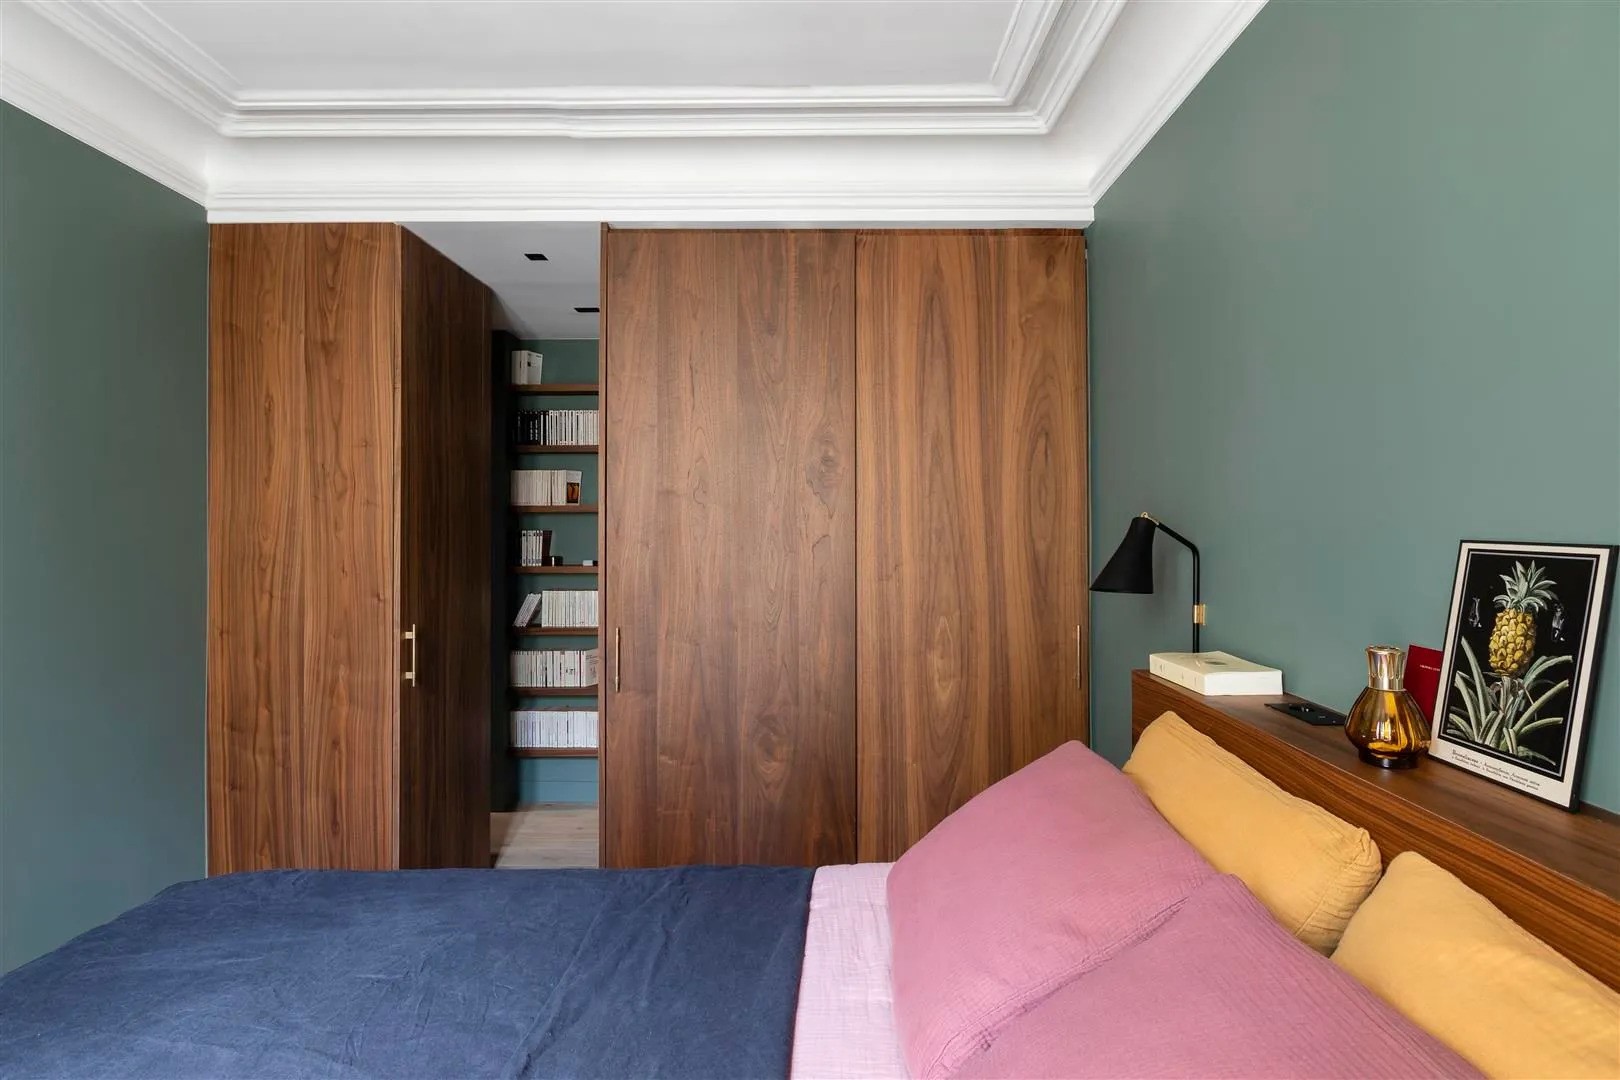 Chambre avec murs vert foncé, aménagements sur mesure en bois noyer et linge de lit coloré